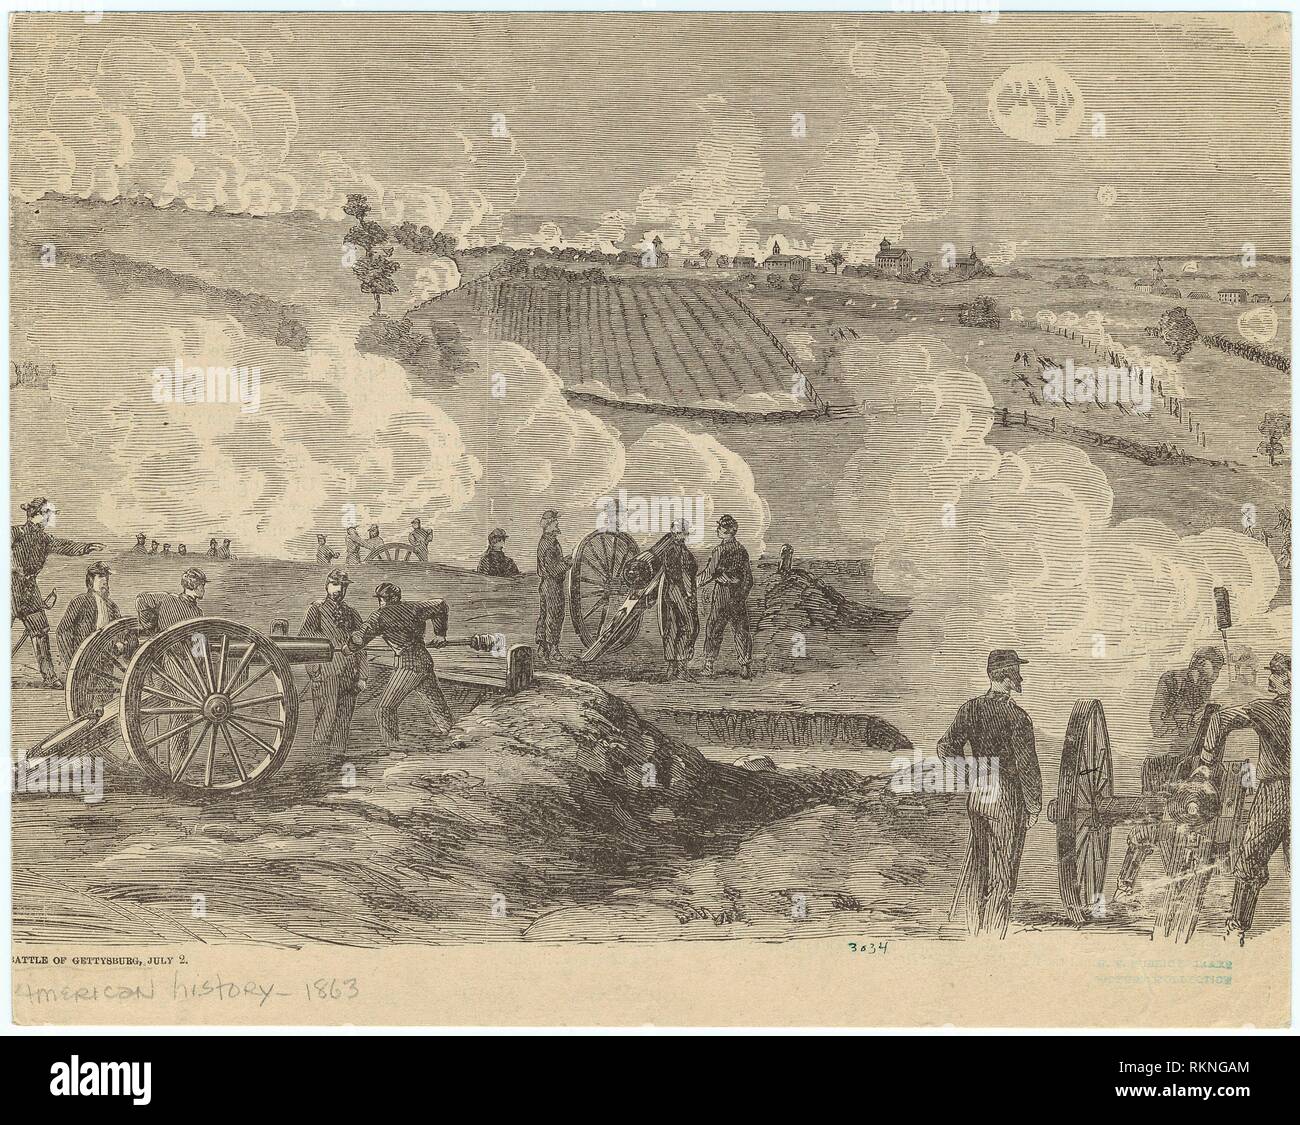 Schlacht von Gettysburg, Juli 2. Mid-Manhattan Bildersammlung der amerikanischen Geschichte - 1863. Datum der Ausgabe: 1866. United States - Geschichte - Bürgerkrieg, Stockfoto